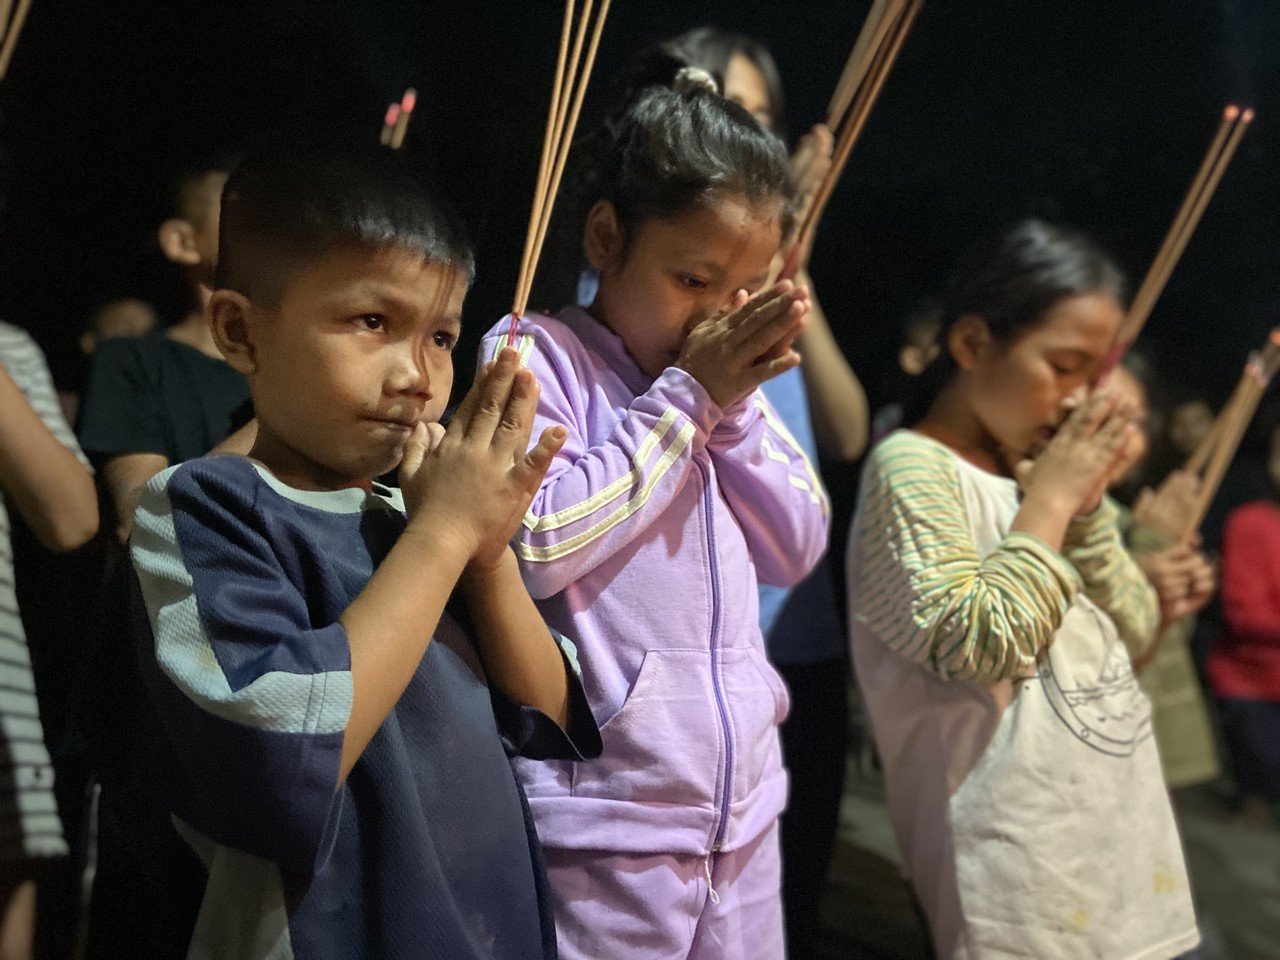 カンボジア正月 4月 空から天女が舞い降りてきて年が明けます そのときにこうしてお線香をお供えして 健康や幸せを祈ります 小さい手でお祈りする 姿が愛らしいです メアス博子 Snadaikhmer Note